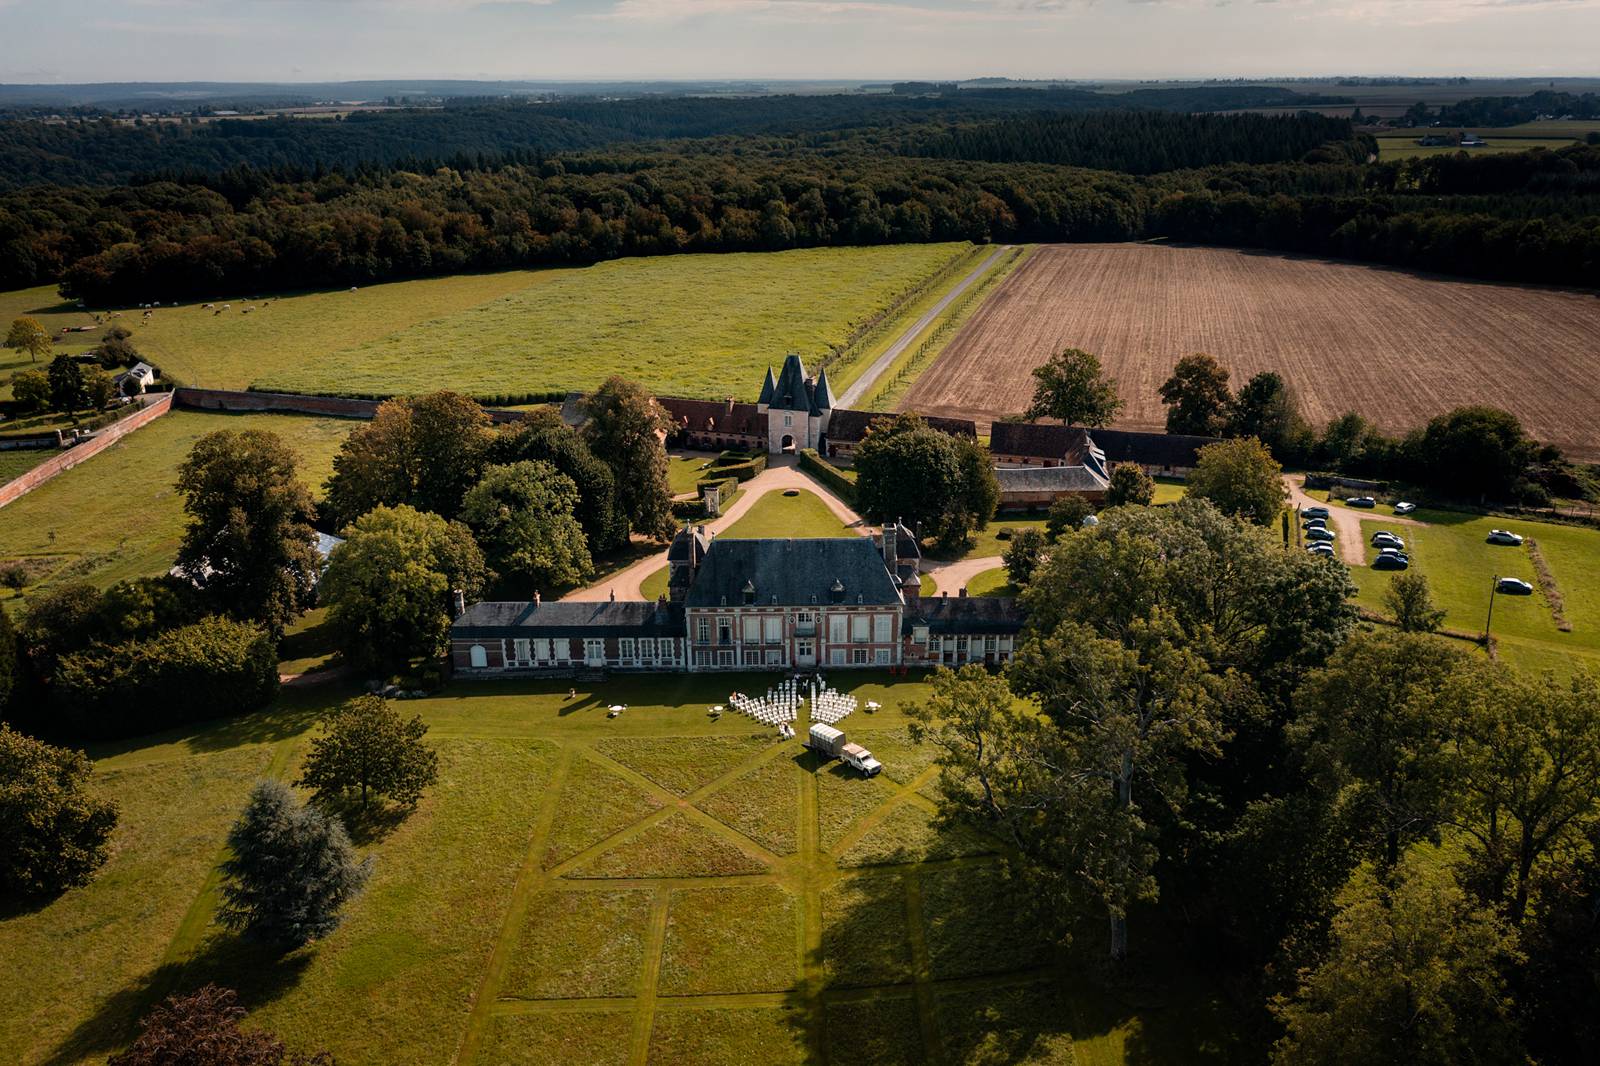 Mariage laïque au Château de Bonnemare en Normandie. Drone mariage. Alexandre Roschewitz photographe mariage.